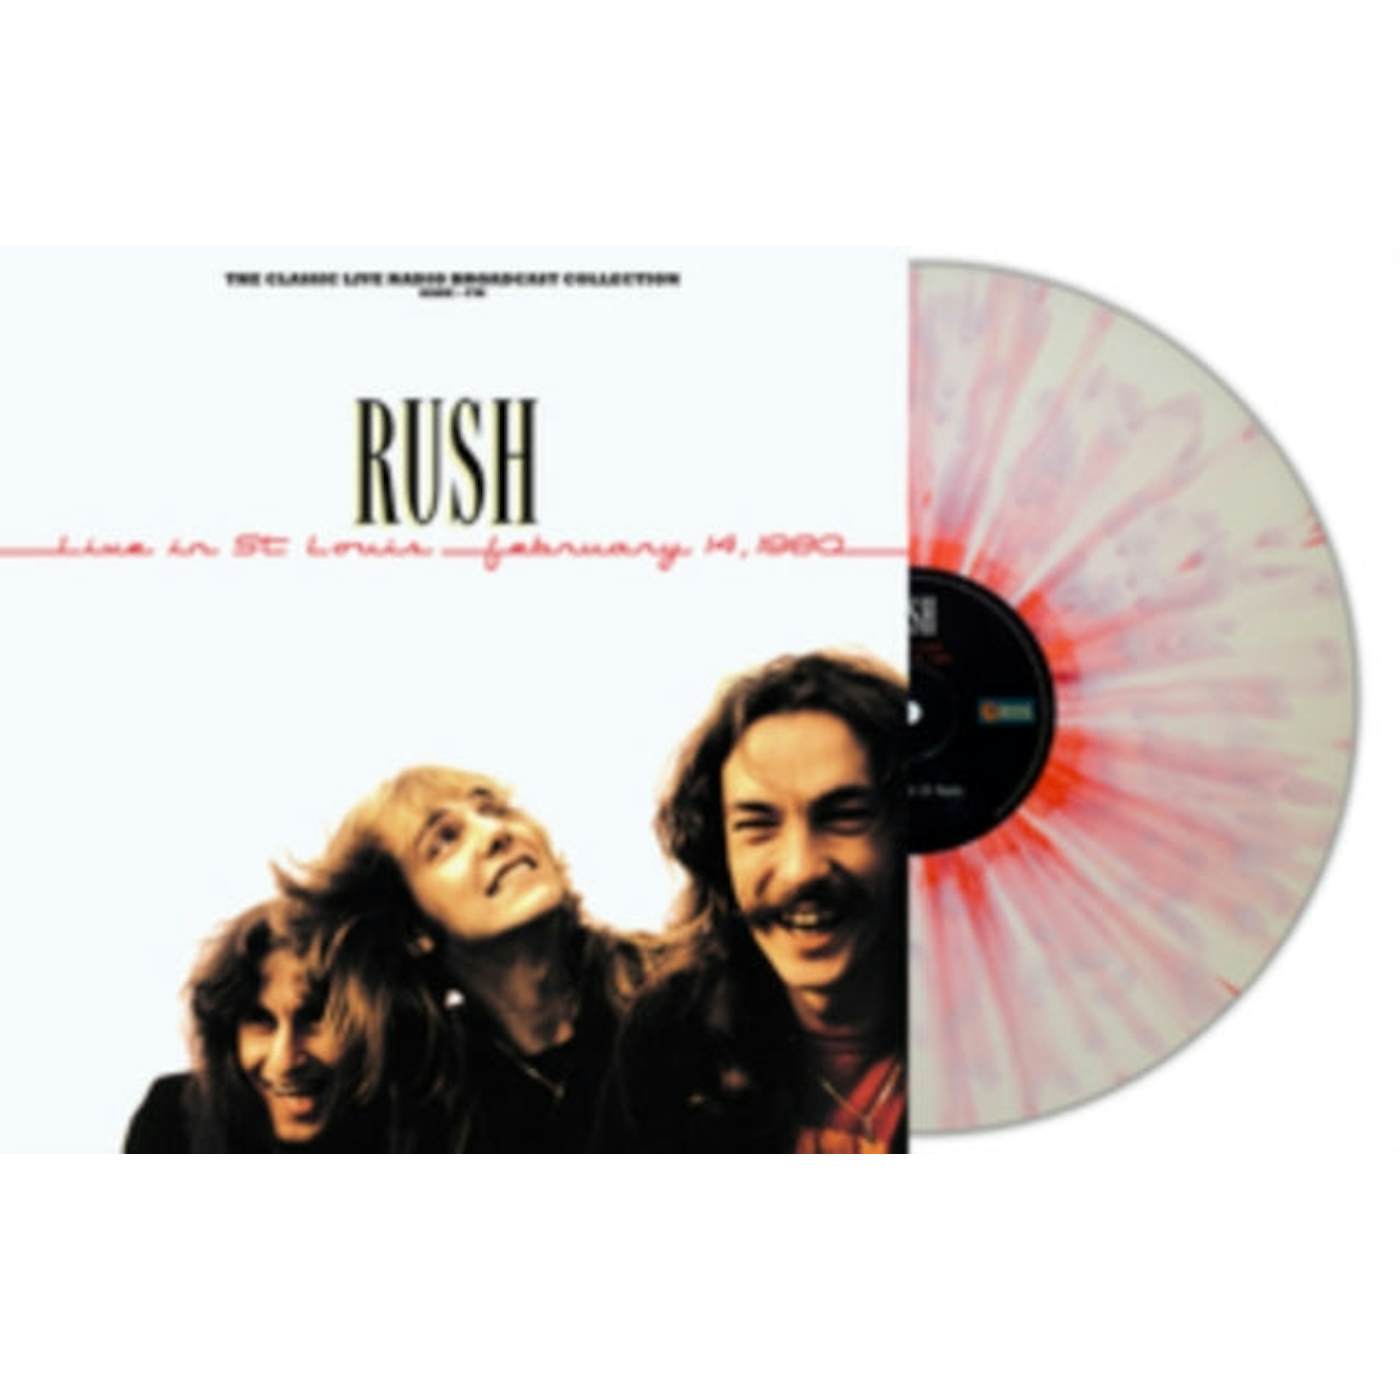 Rush LP - Live In St Louis 1980 (White/Red Splatter Vinyl)